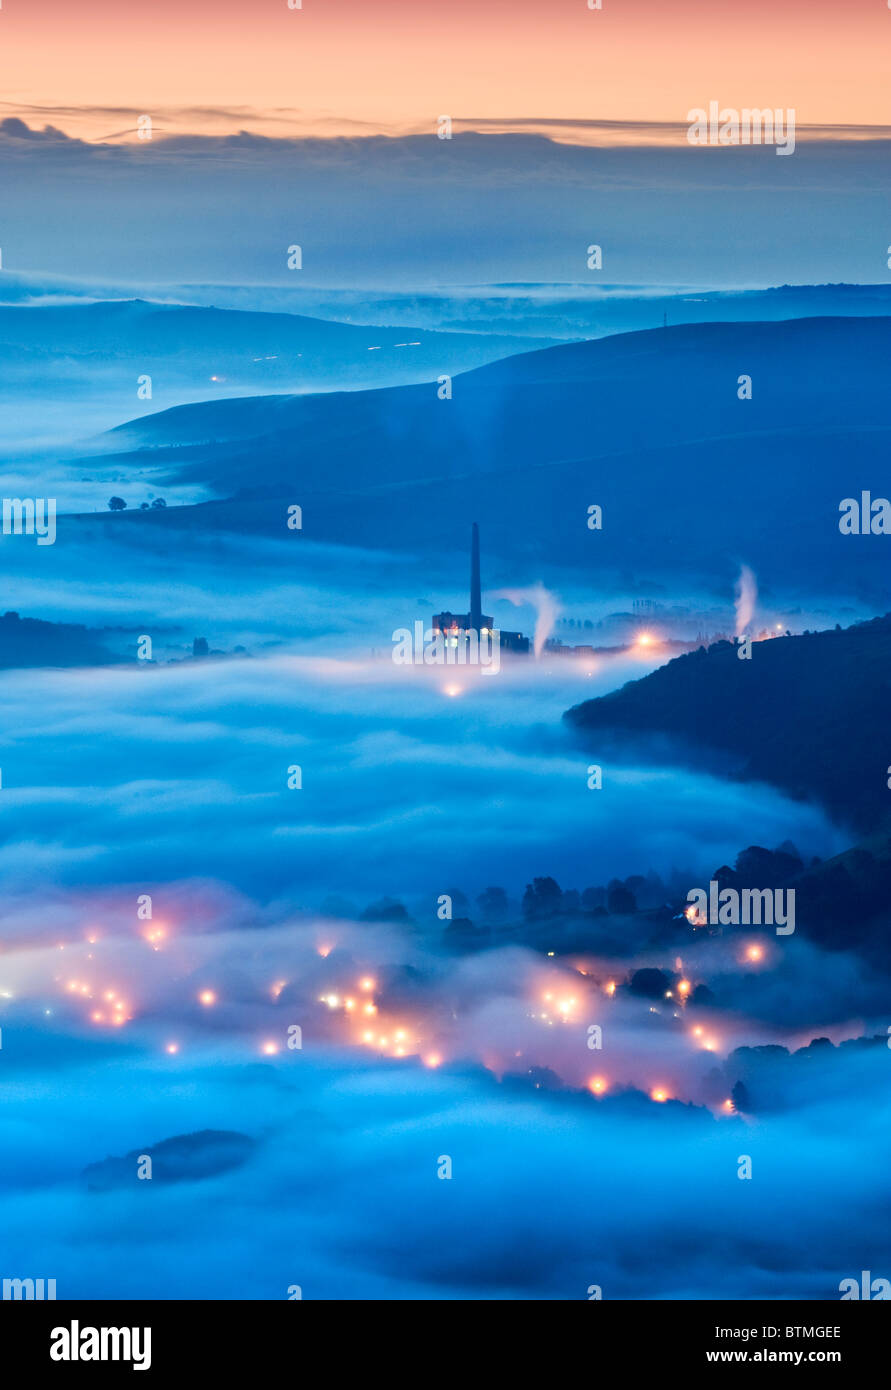 La cimenterie Lafarge & Lumières dans le brouillard, de Castleton Hope Valley, parc national de Peak District, Derbyshire, Angleterre, RU Banque D'Images